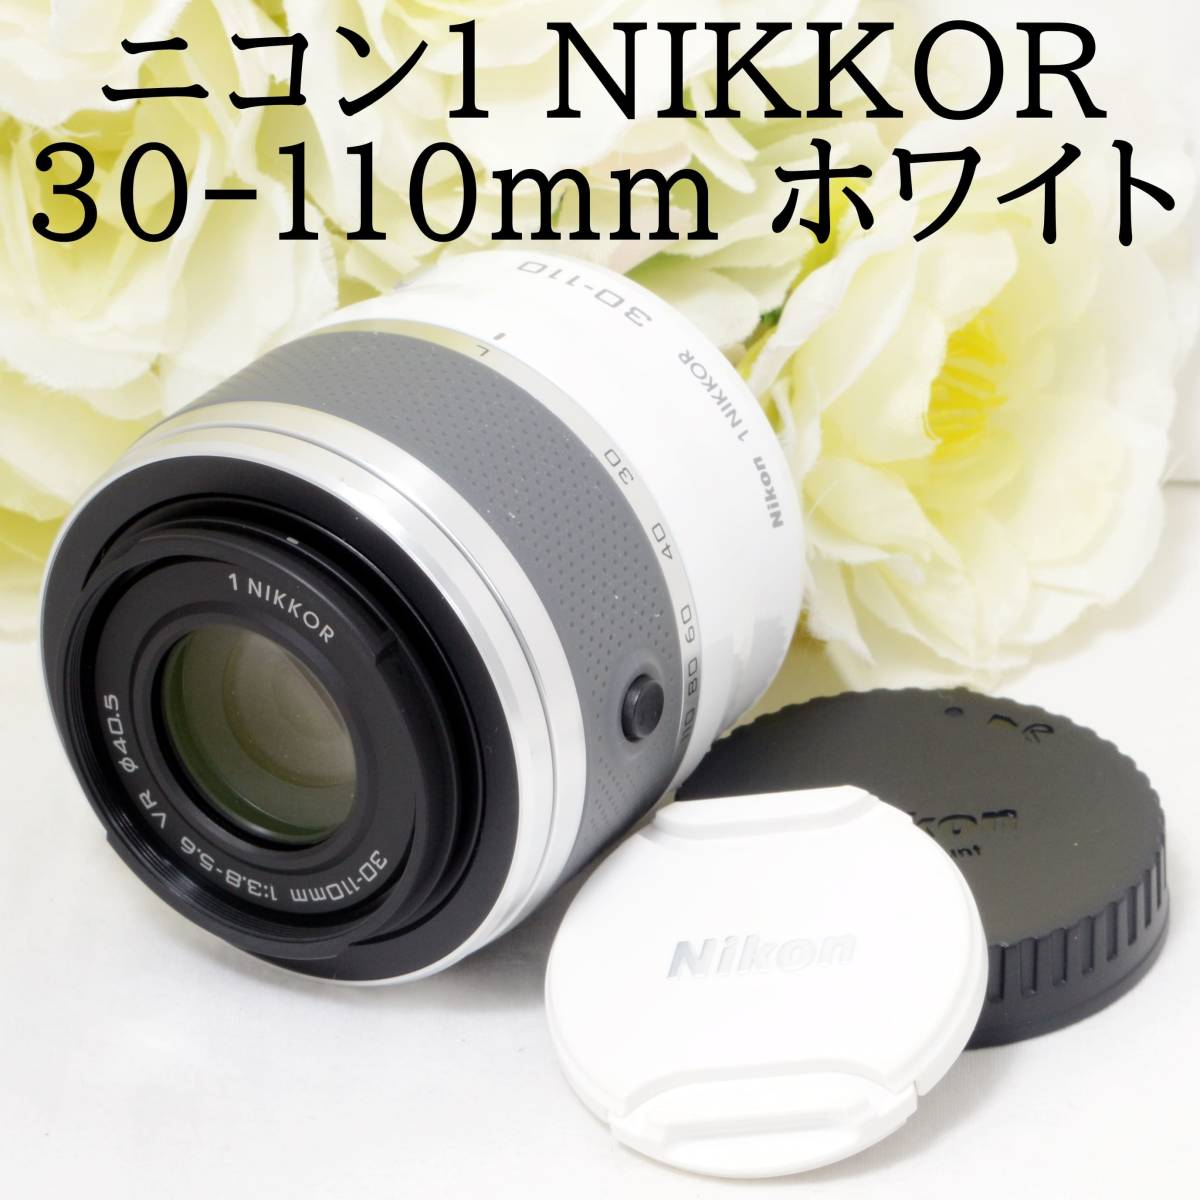 ニコン 1 NIKKOR VR 30-110mm f/3.8-5.6 [シルバー] オークション比較